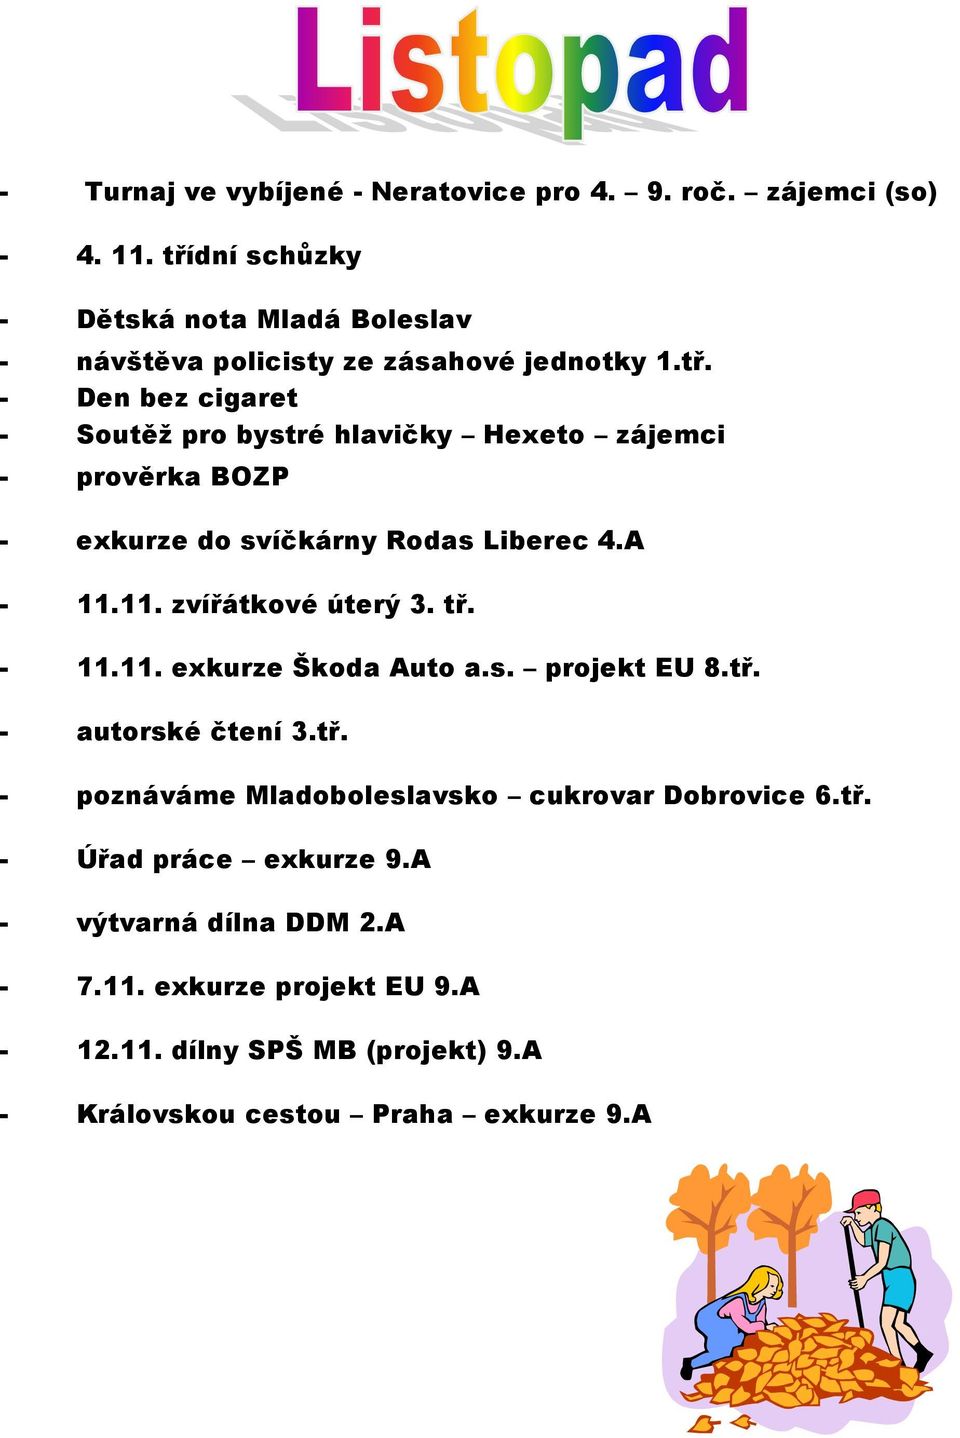 A - 11.11. zvířátkové úterý 3. tř. - 11.11. exkurze Škoda Auto a.s. projekt EU 8.tř. - autorské čtení 3.tř. - poznáváme Mladoboleslavsko cukrovar Dobrovice 6.